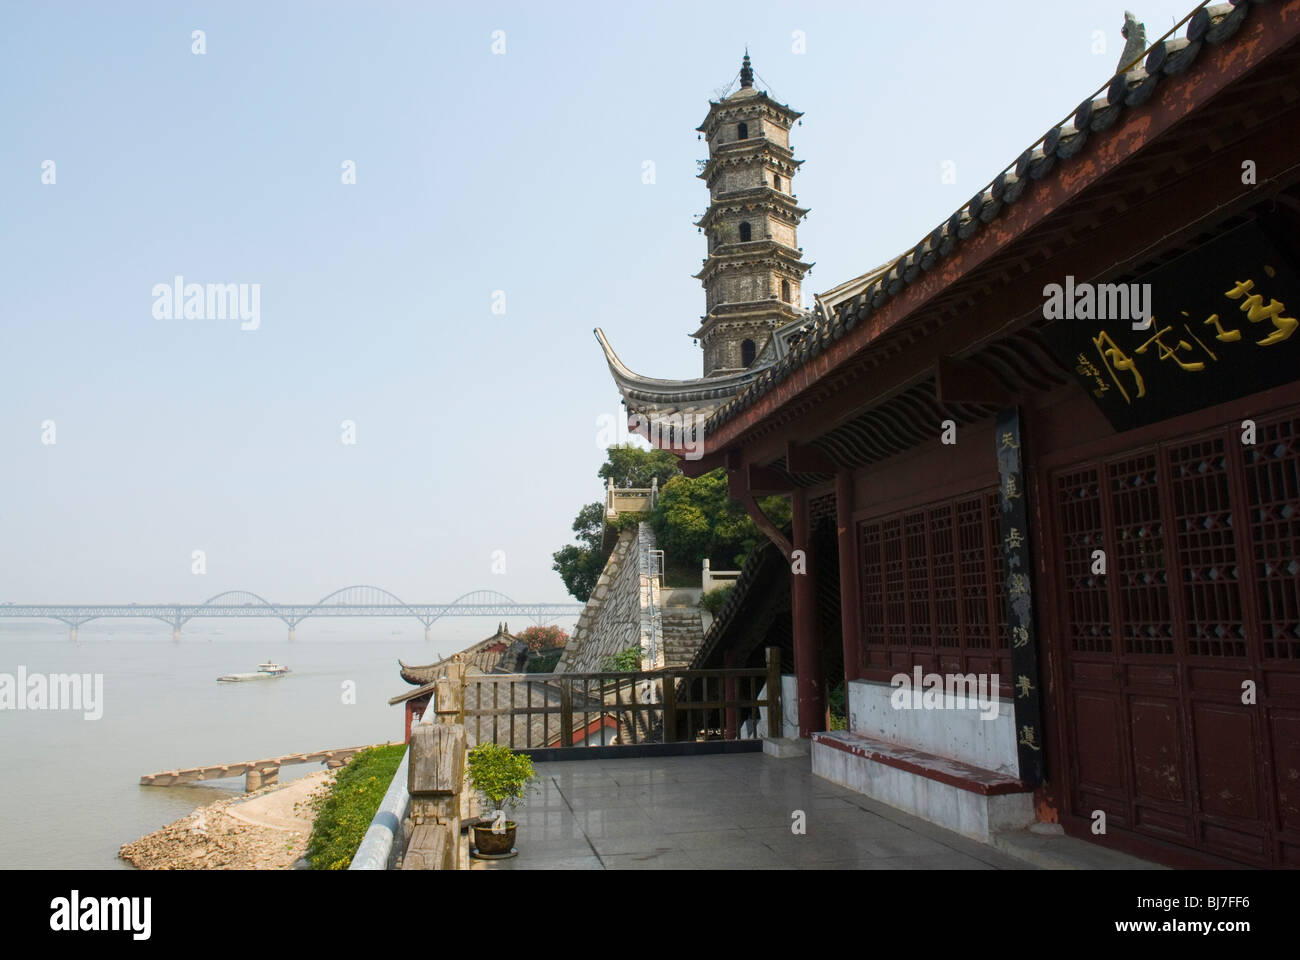 Suojiang Tower and Yangtze River Bridge. Jiujiang. Jiangxi province, China. Stock Photo